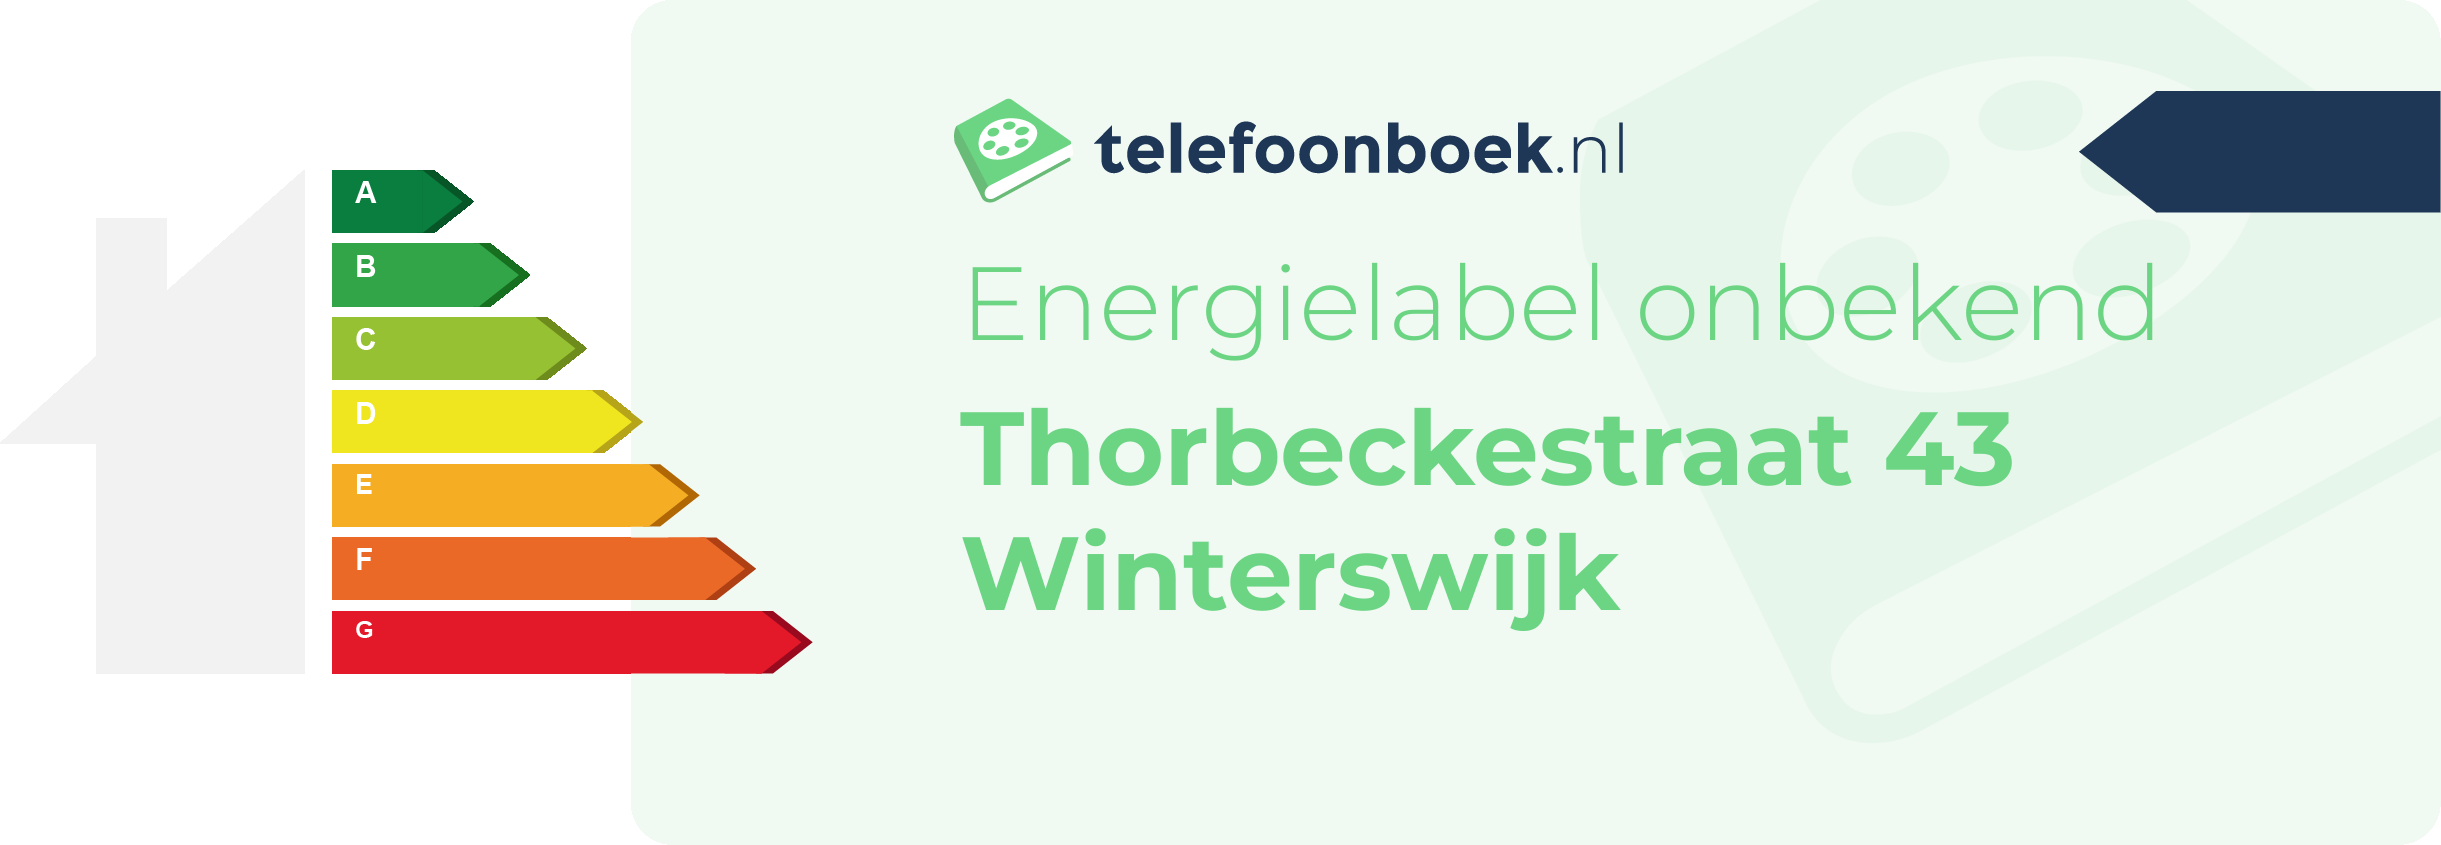 Energielabel Thorbeckestraat 43 Winterswijk